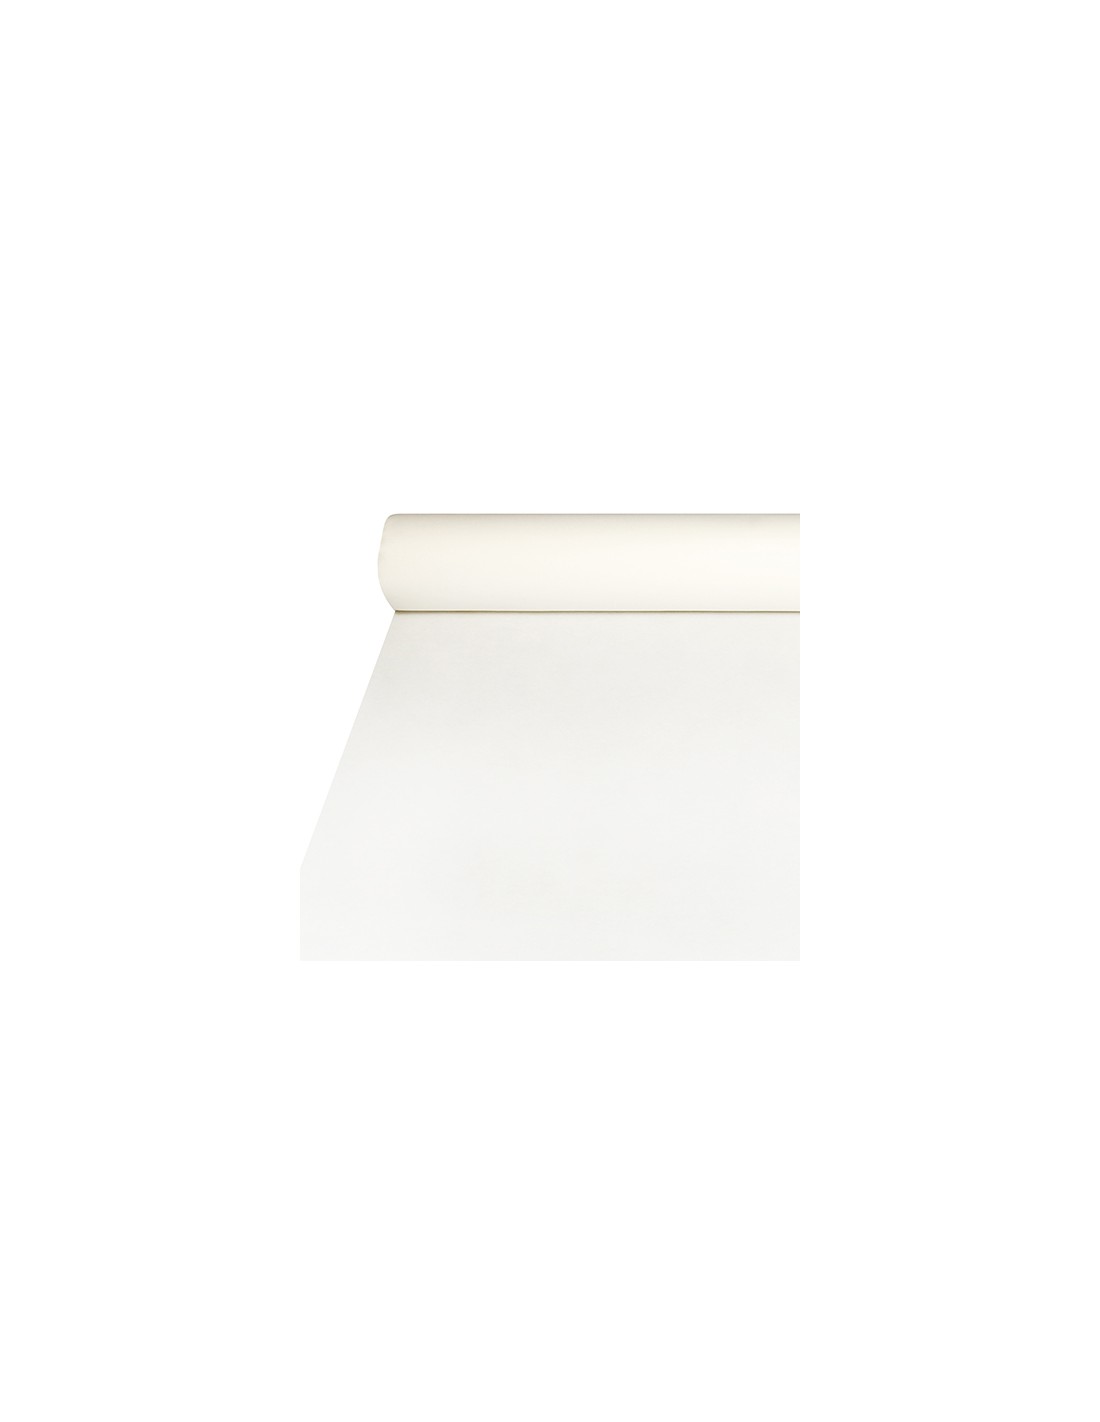 Mantel papel rollo blanco 37g. rollo 1x100m. - blonda opalina y mantel papel